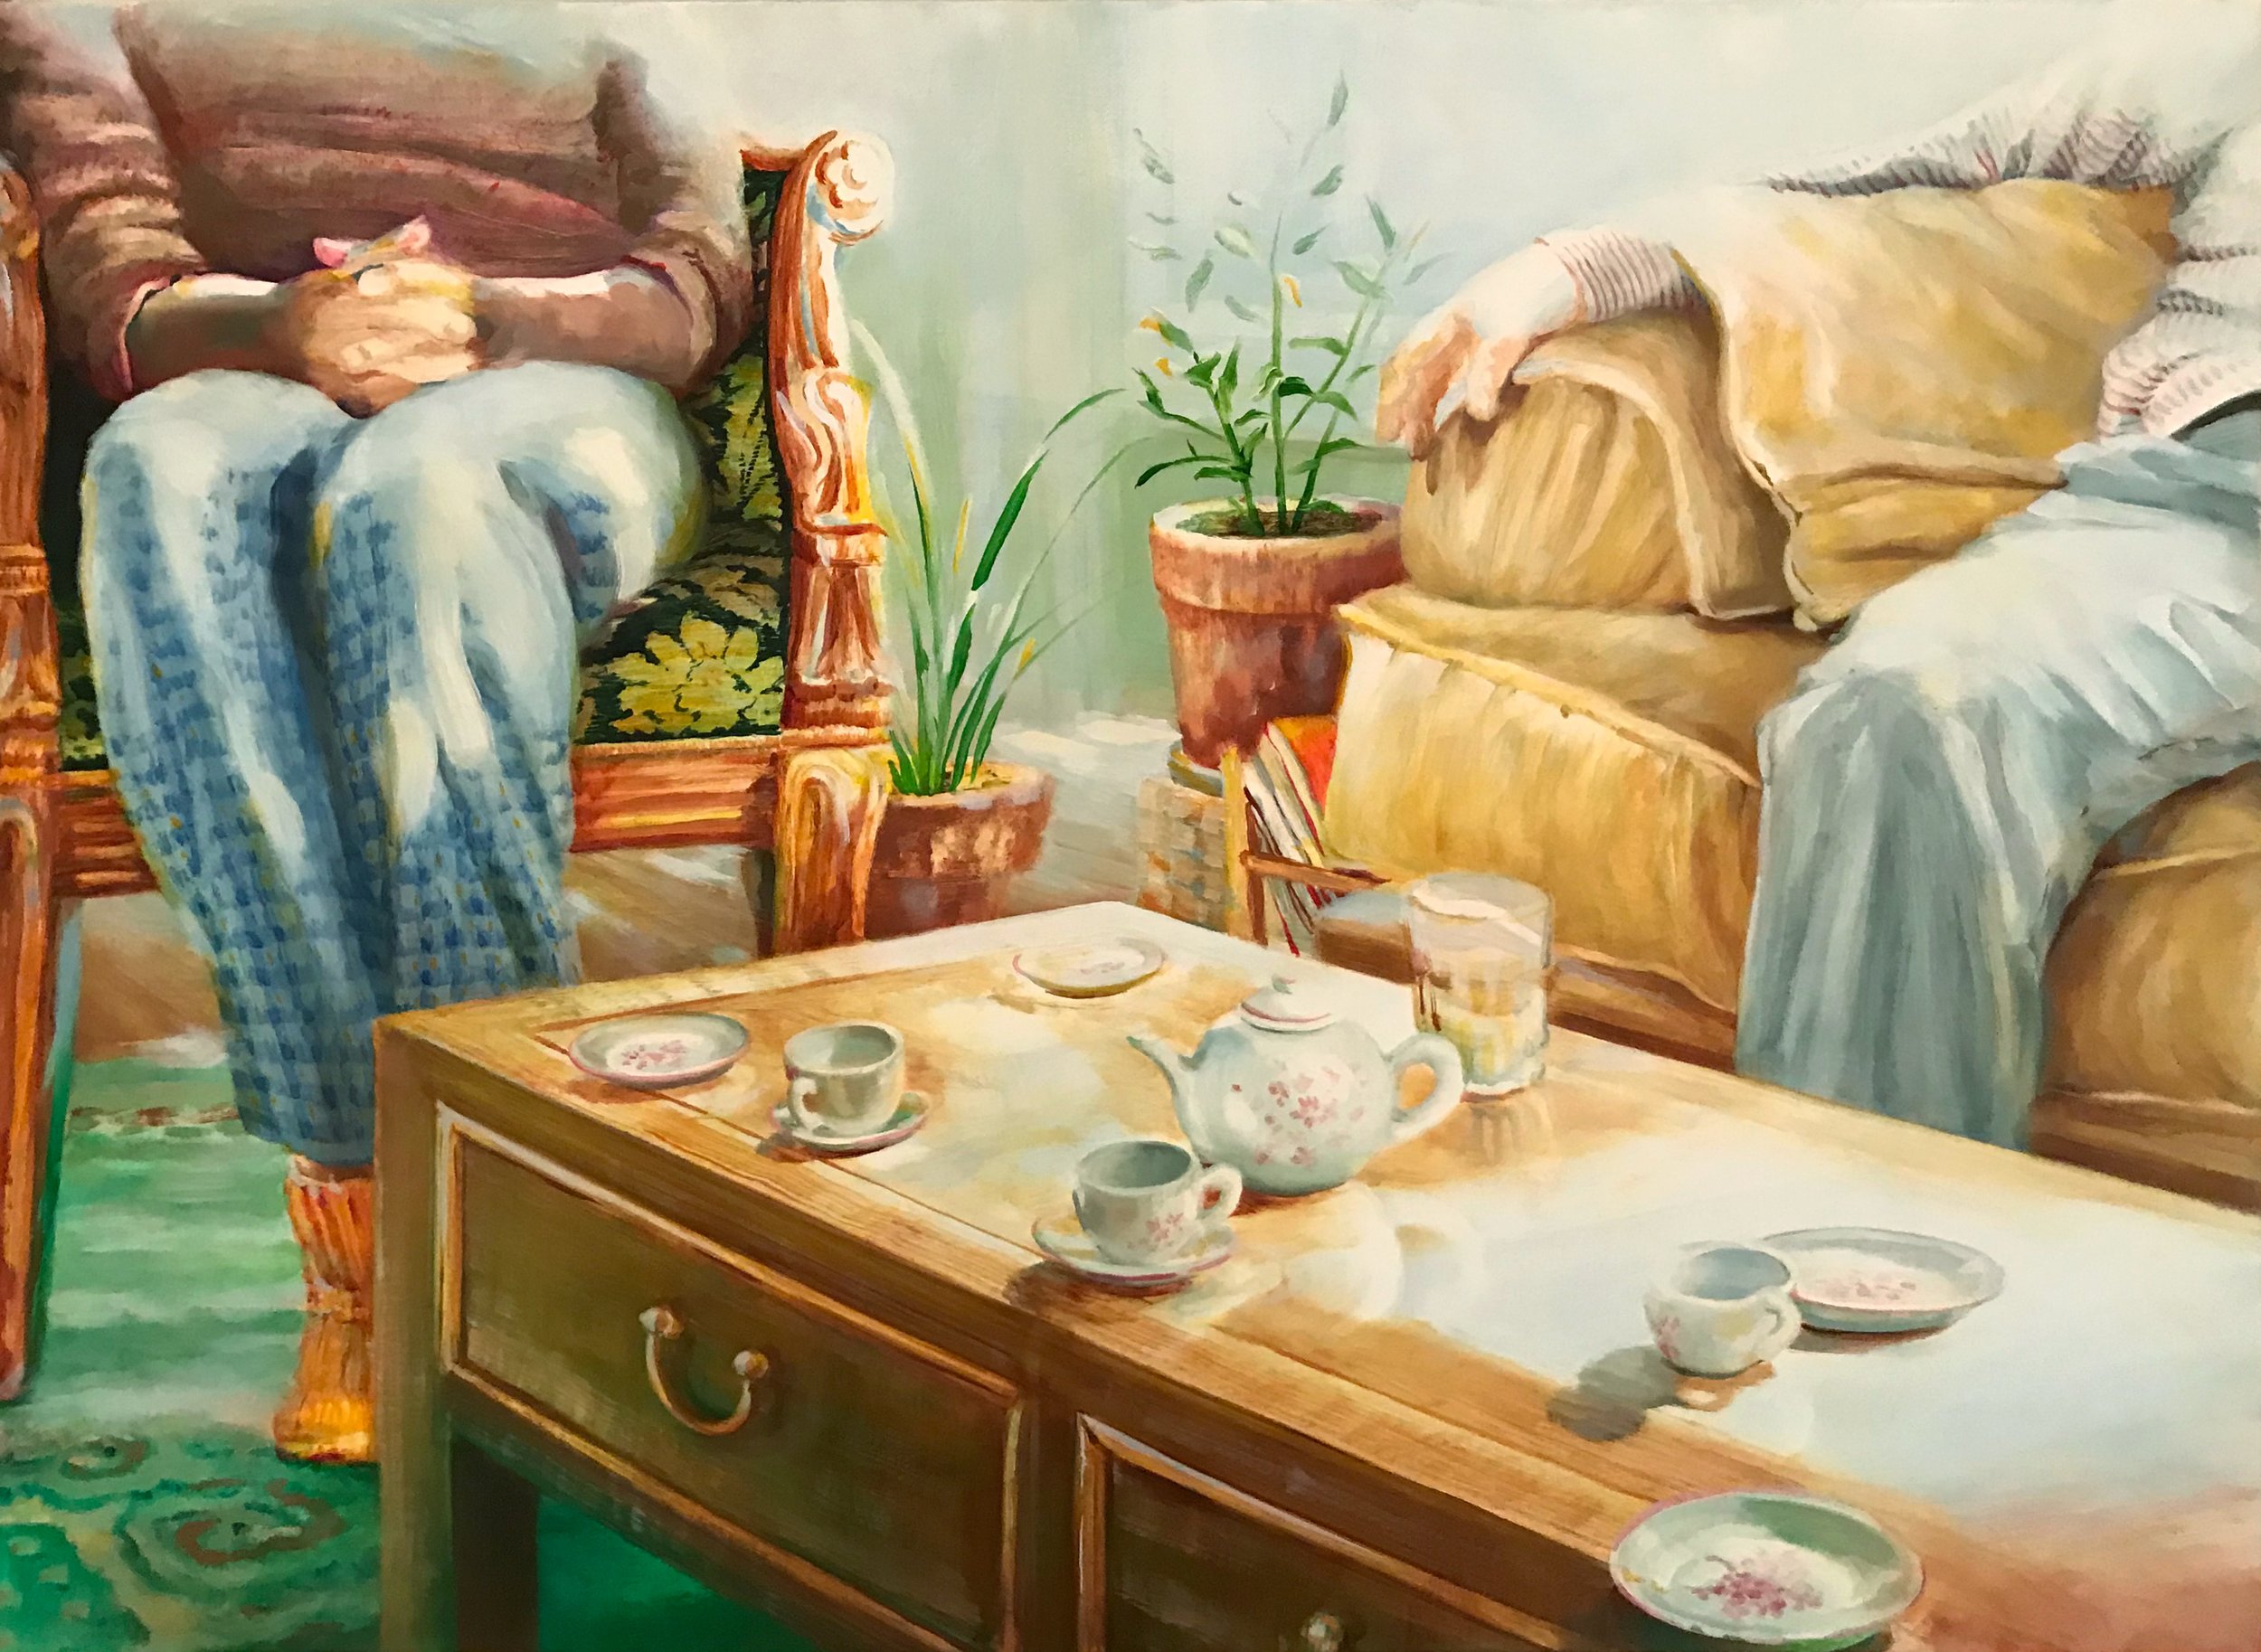   Tea Party   oil on canvas  16” x 12,” 2020   